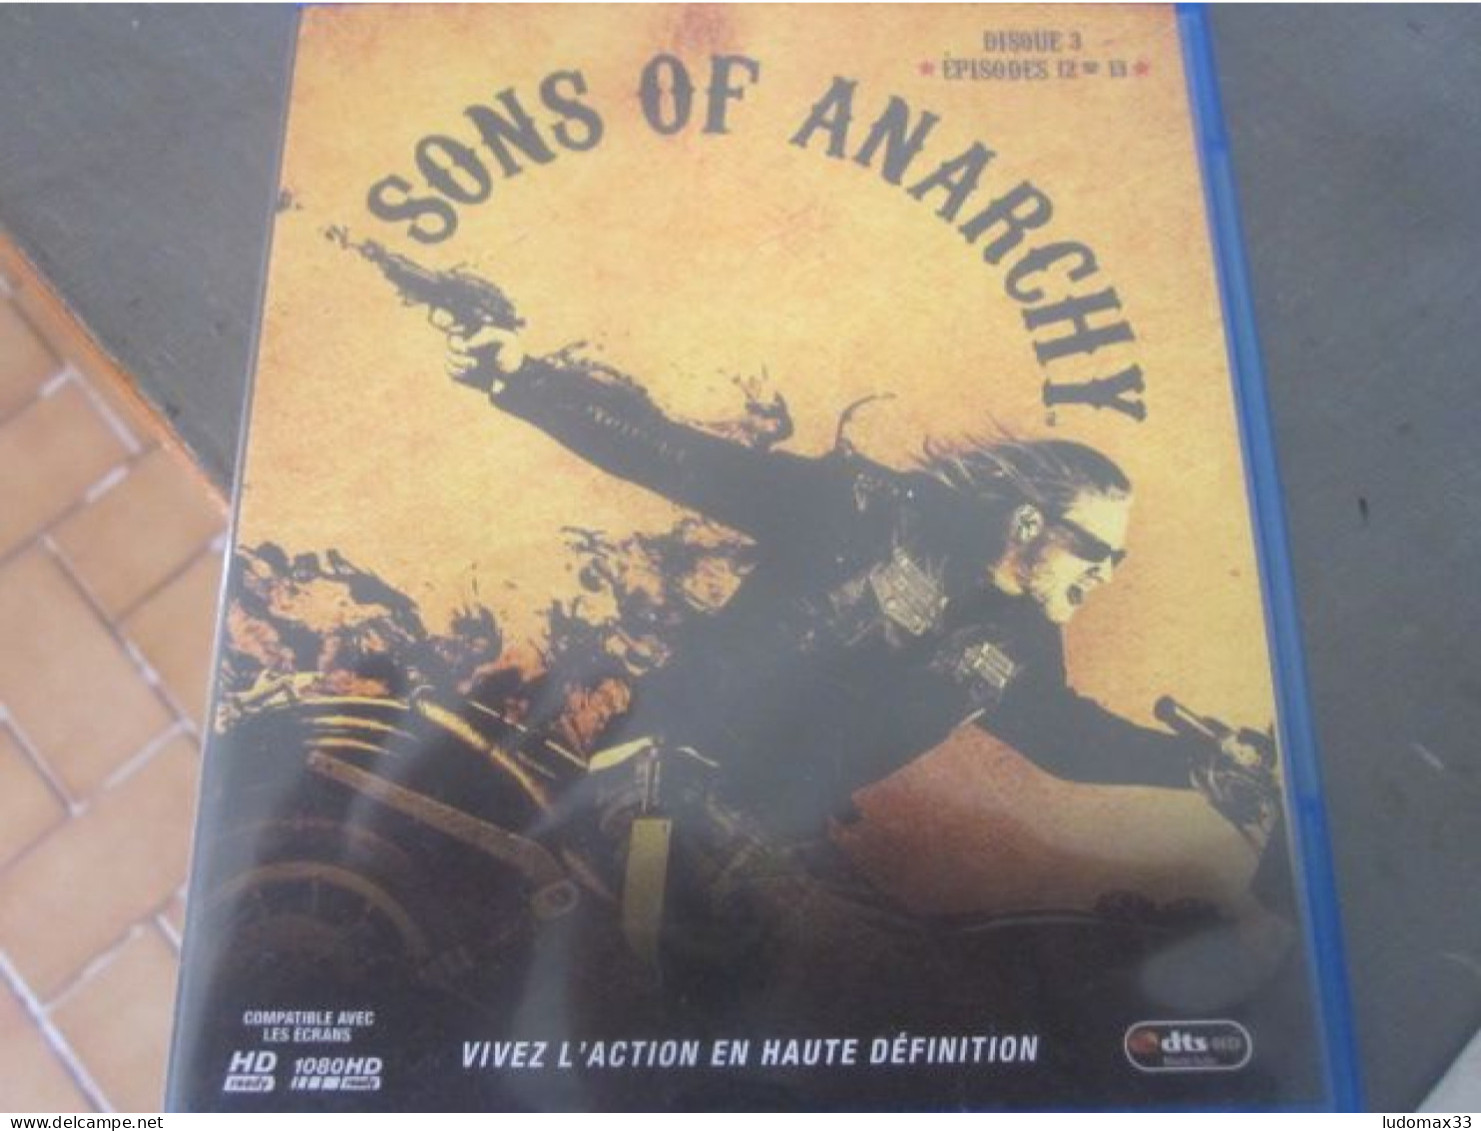 Sons Of Anarchy Disque 3 Episodes 12 13 - Azione, Avventura